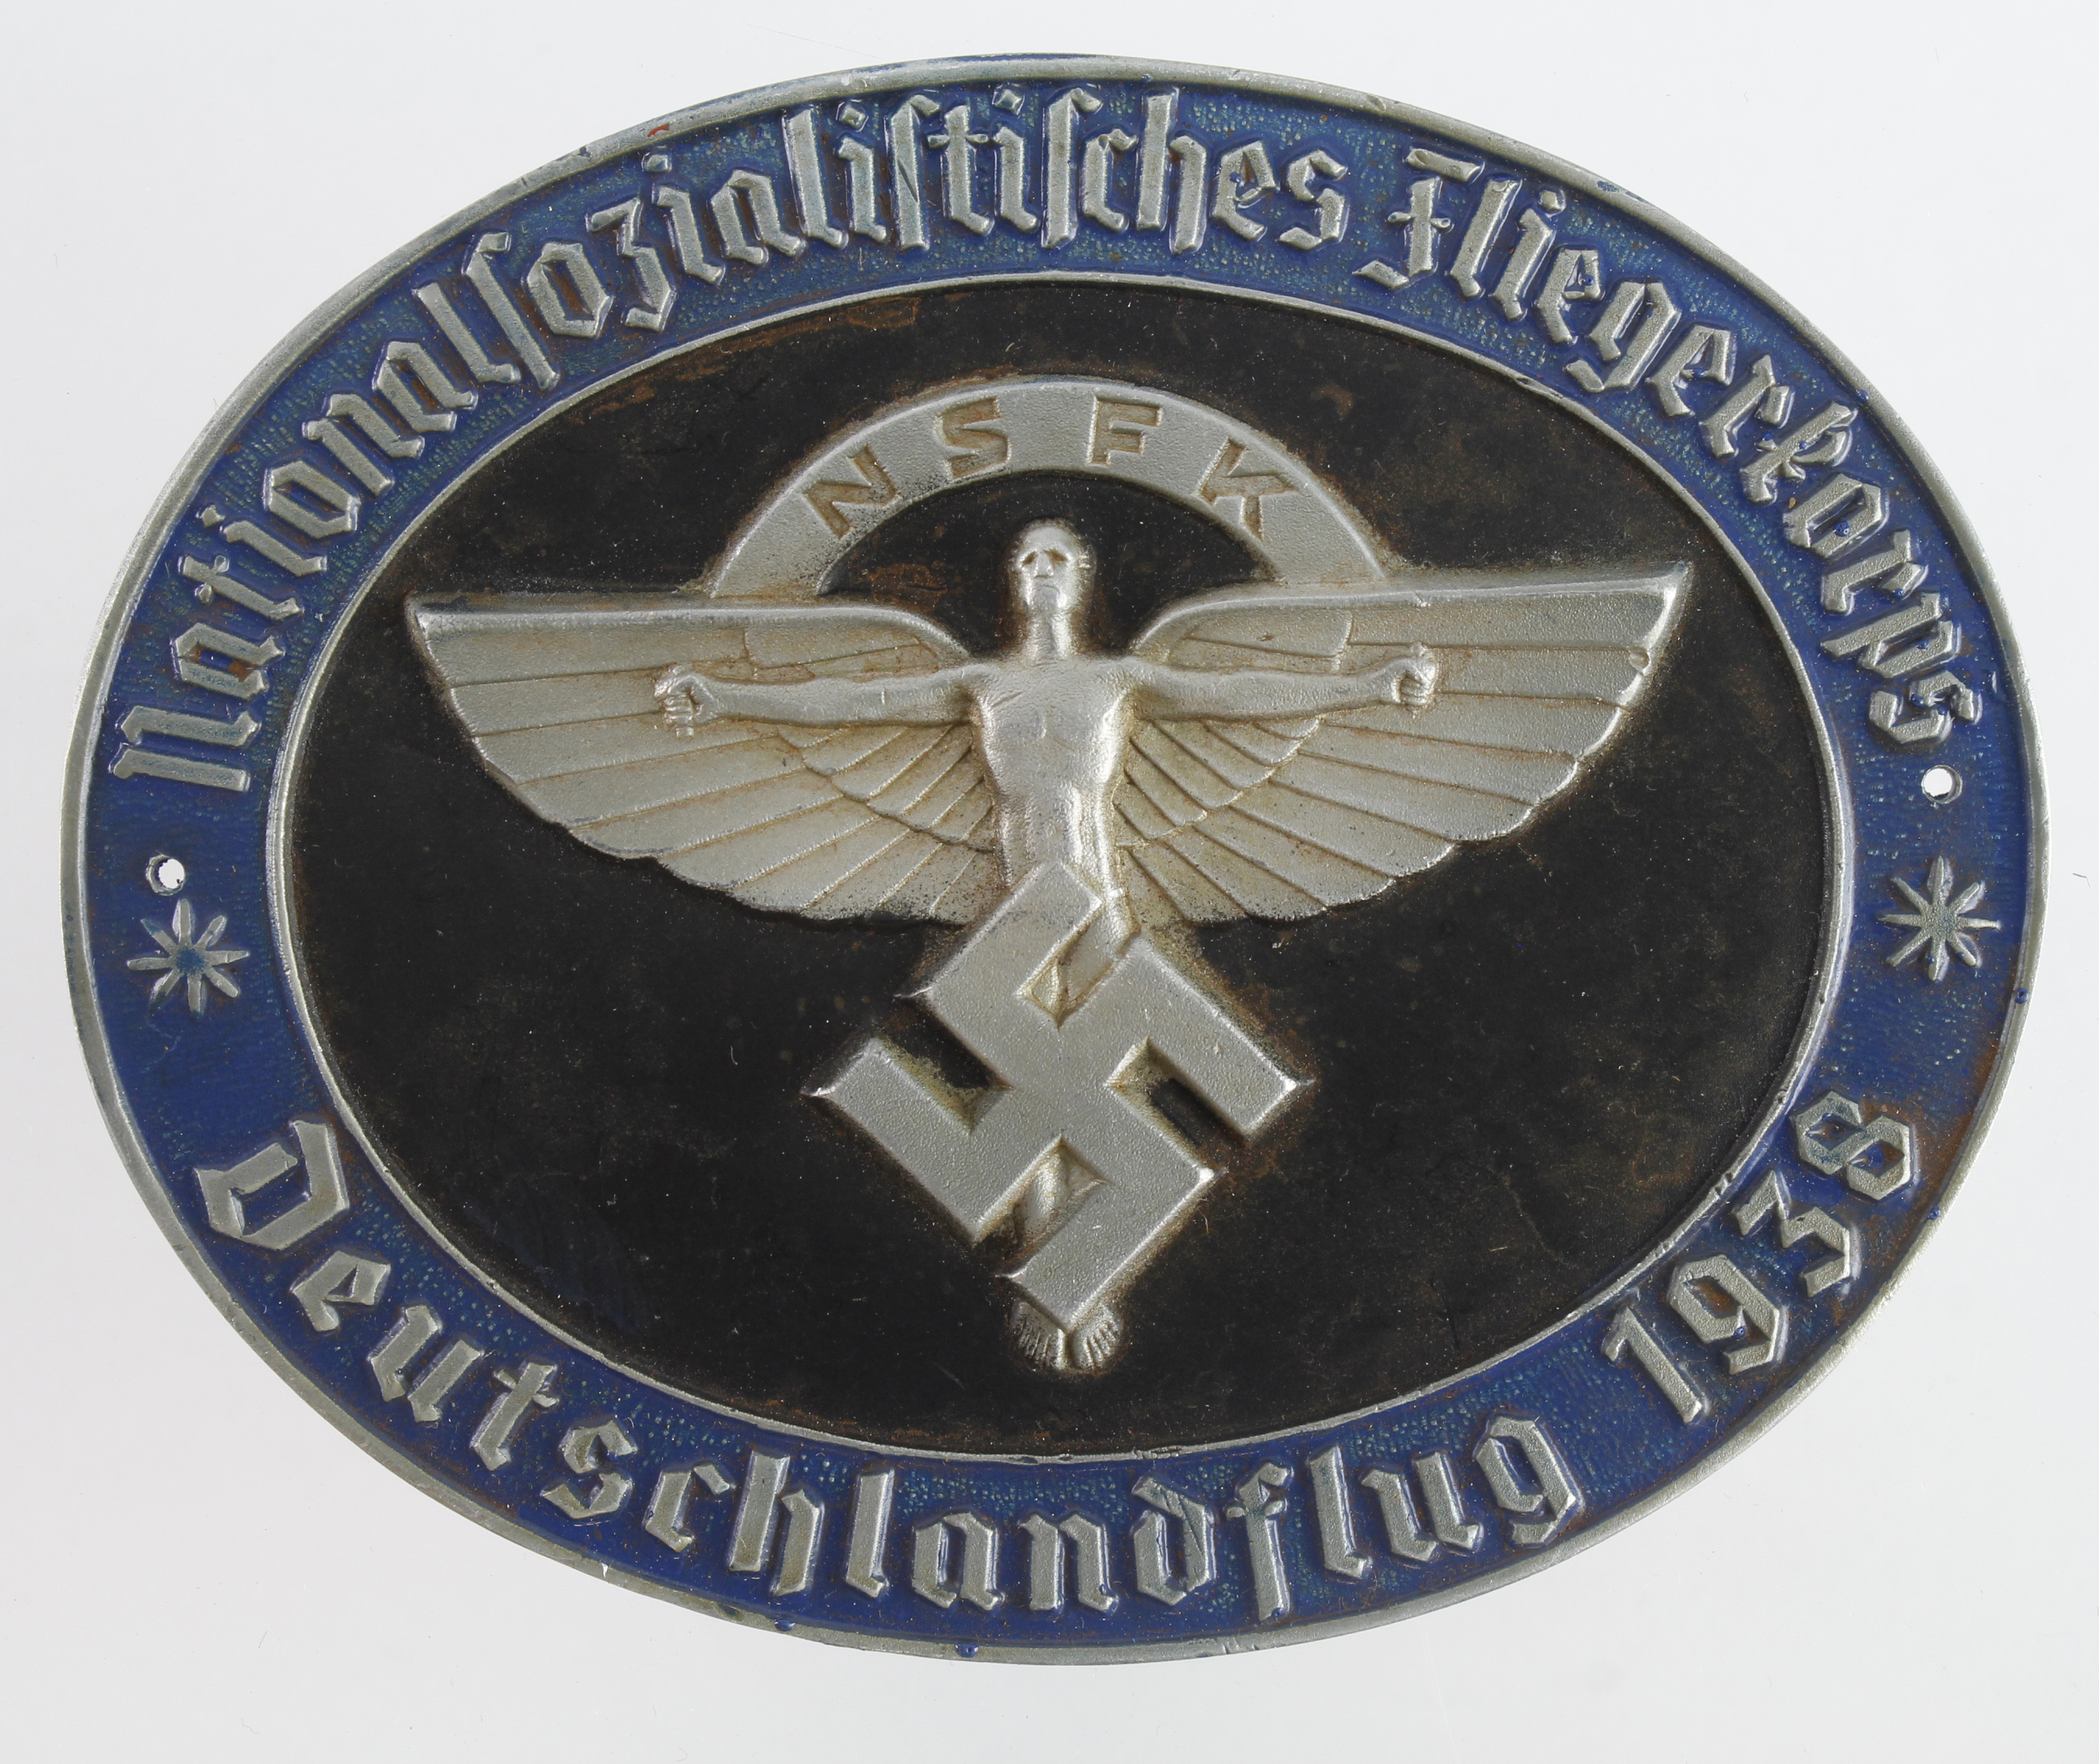 German NSFK Deutschlandflug 1938 rally badge.